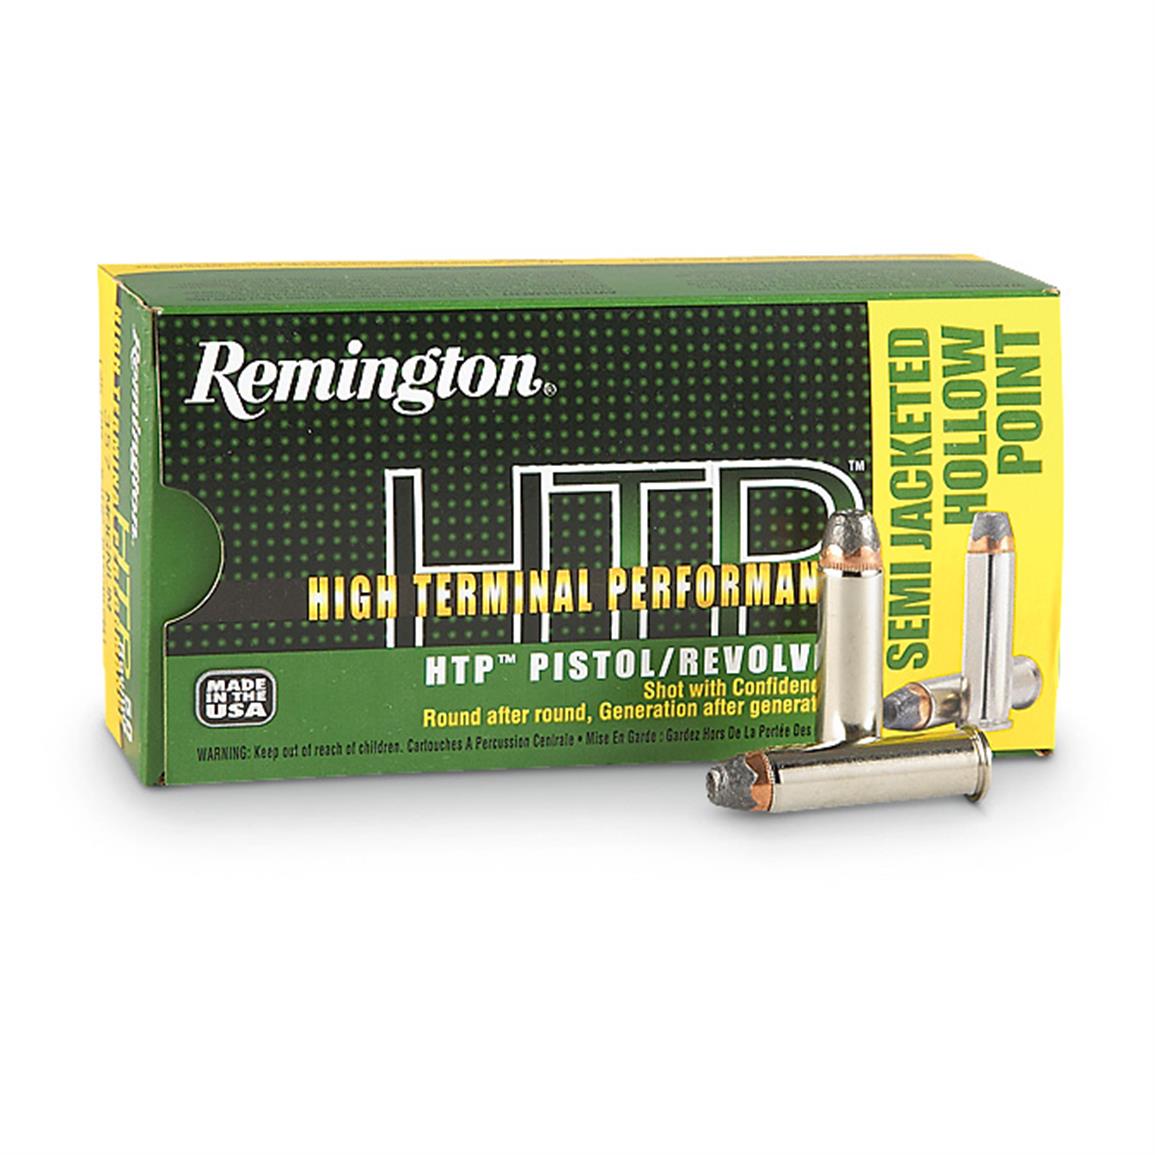 Remington 40 Sandw 155 Grain Jhp High Terminal Performance Ammo 283159 